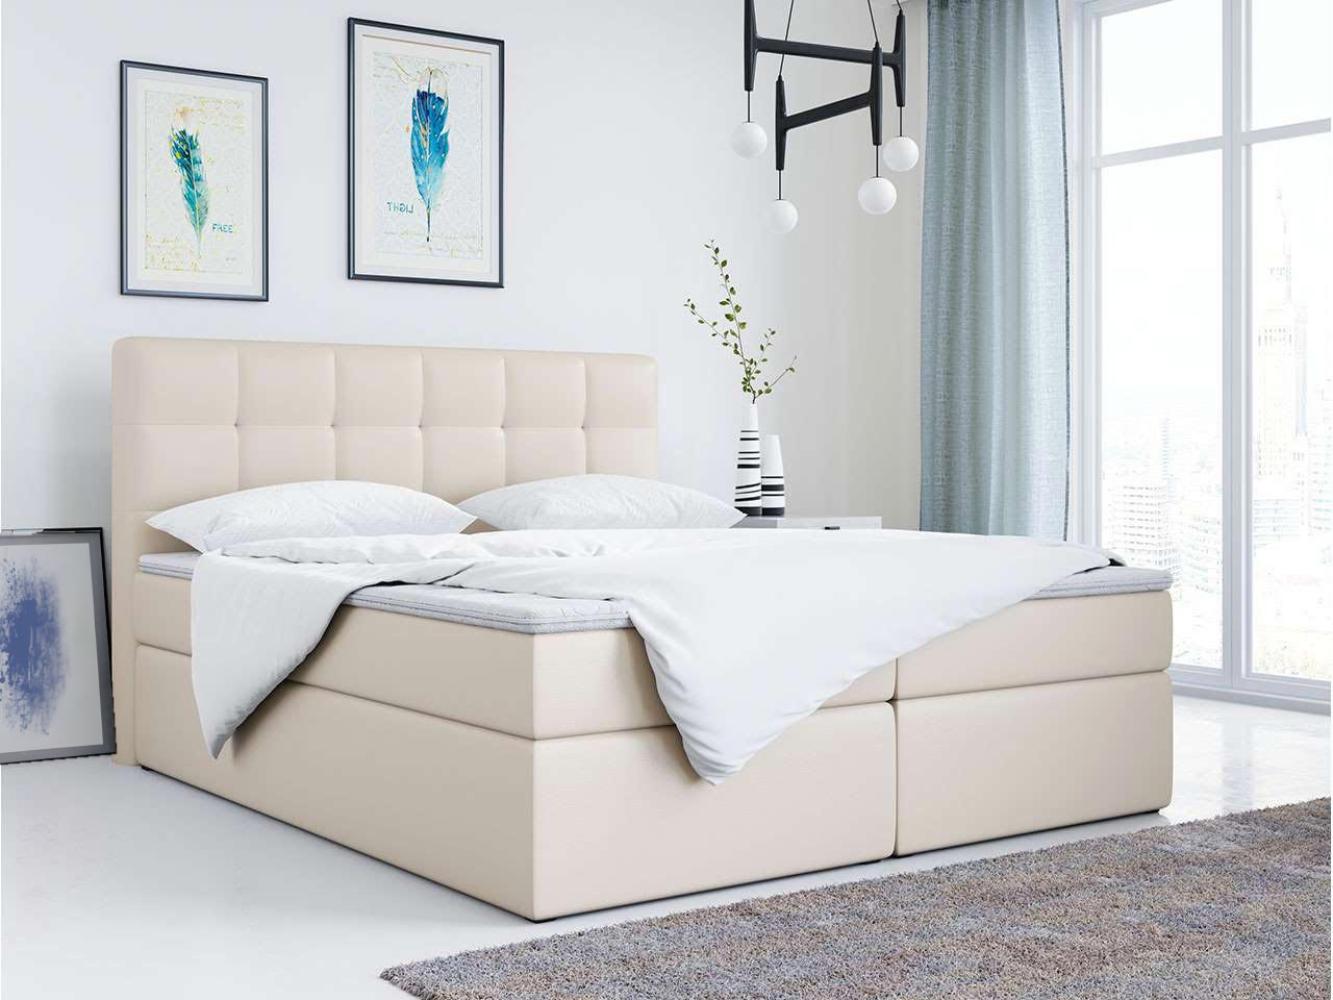 Doppelbett Polsterbett Kunstlederbett mit Bettkasten - TOP-2 - 120x200cm - Beige Kunstleder - H3 Bild 1